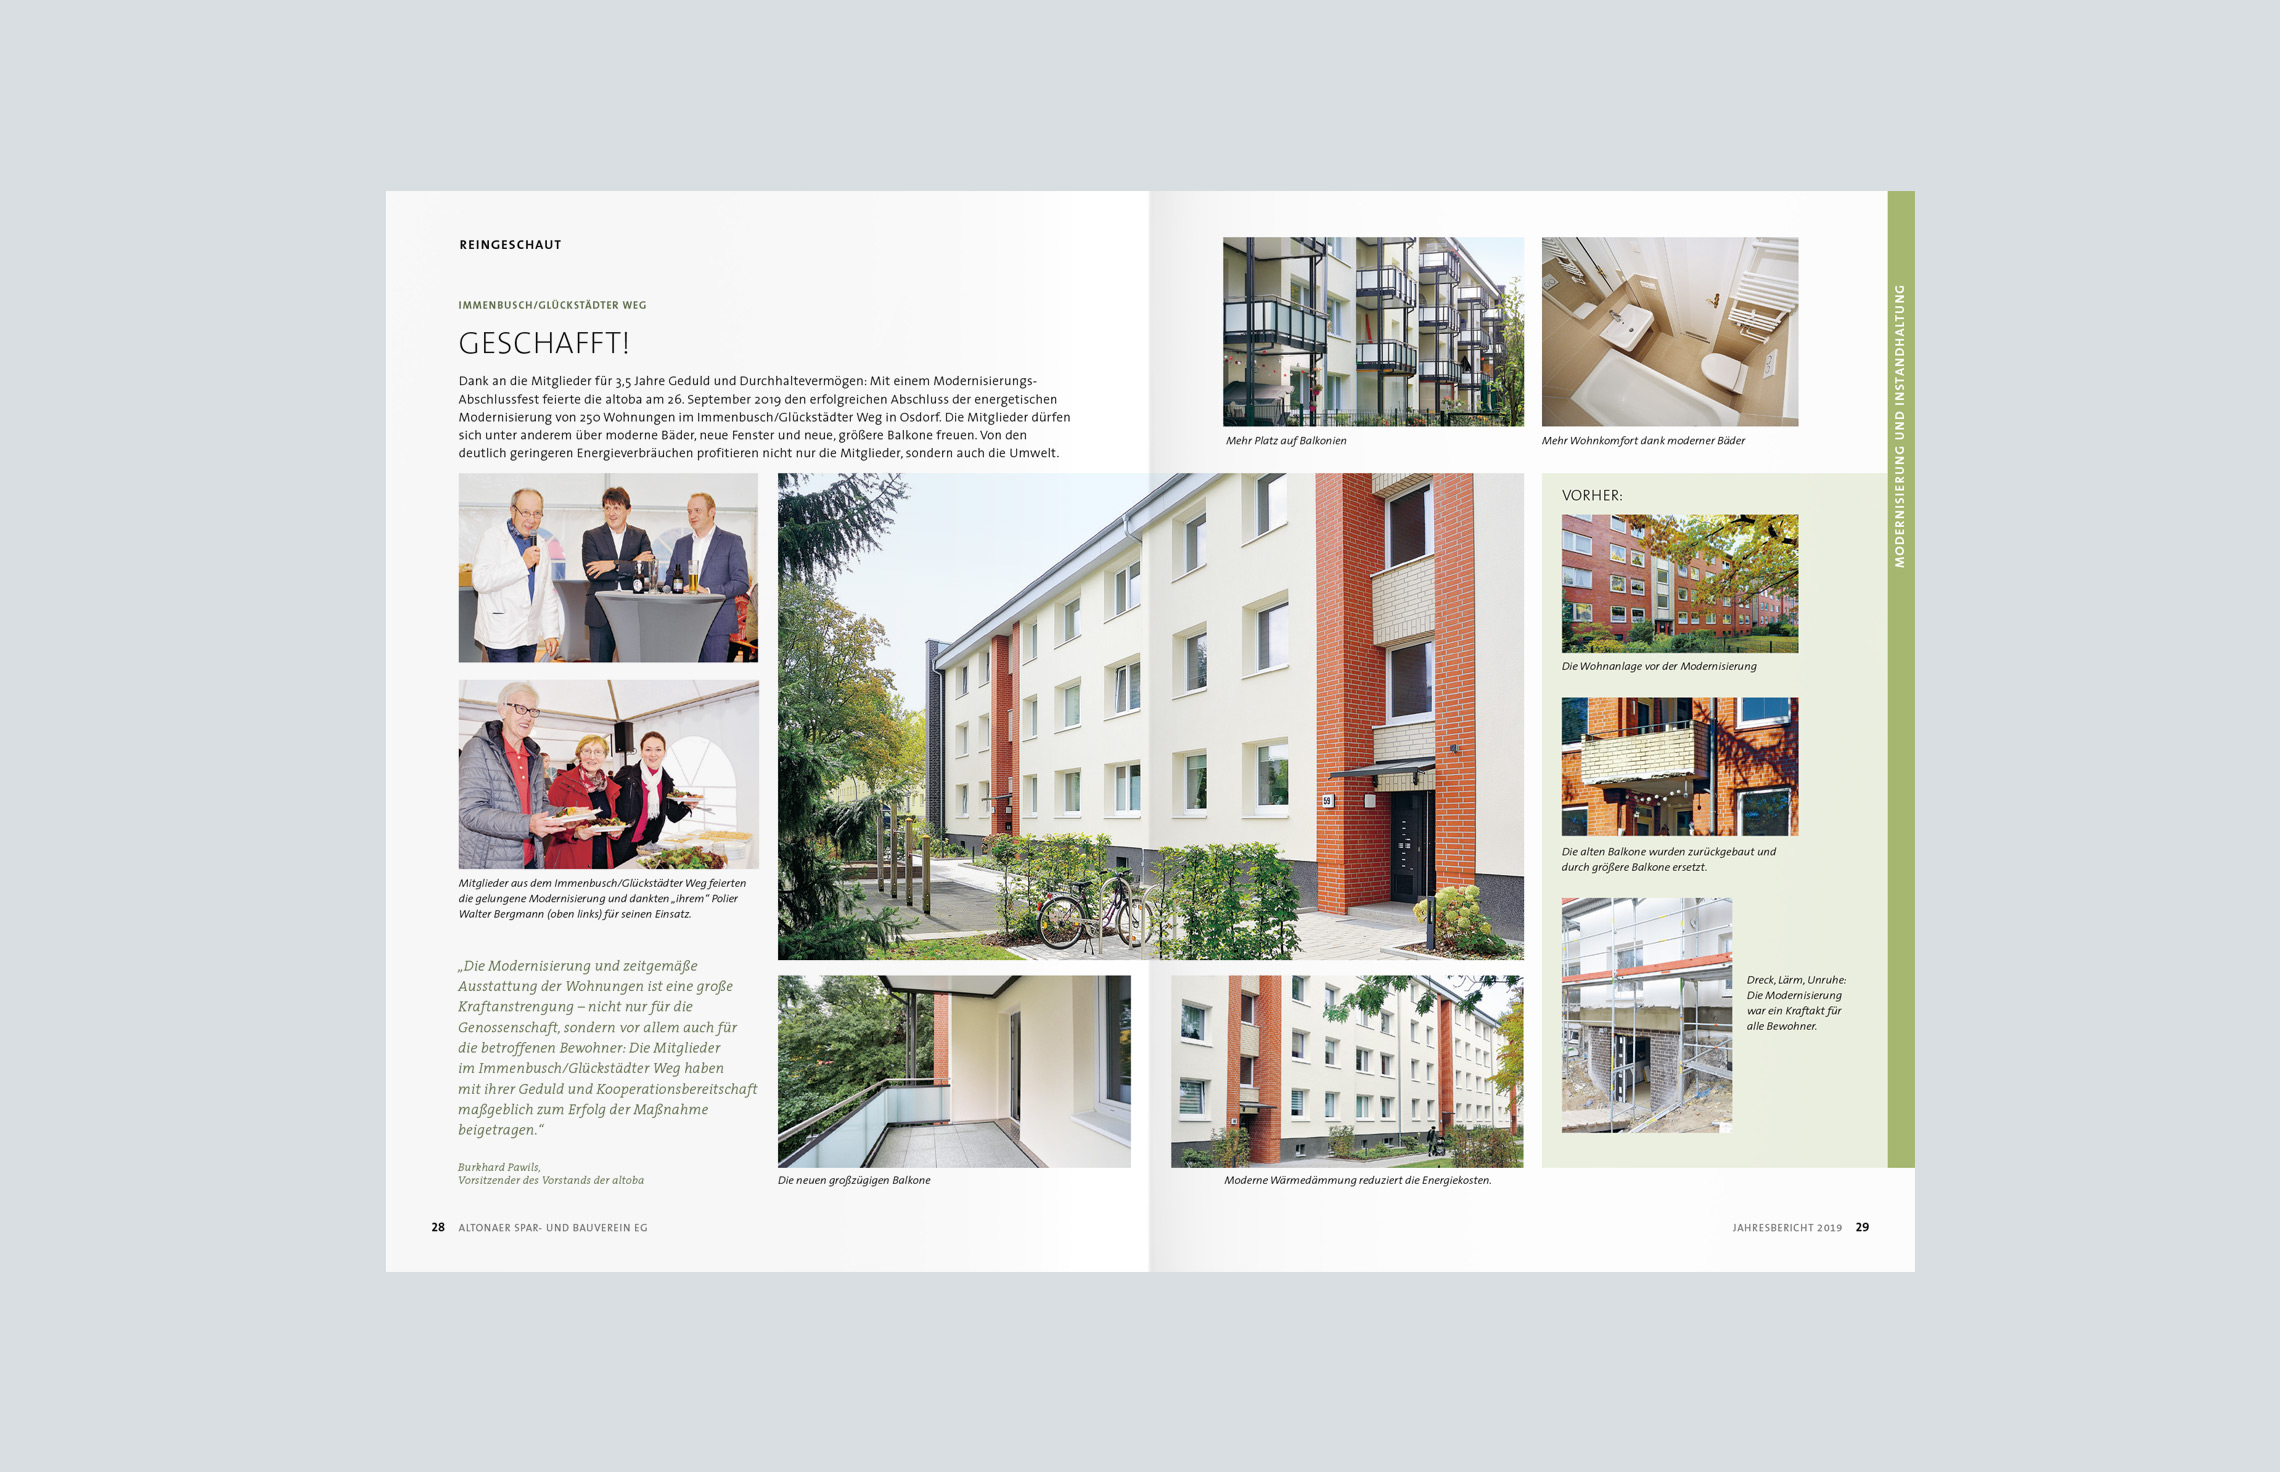 Annual Report Design, Geschäftsberichte, Jahresbericht 2019 der altoba, Hamburg; Innenseiten